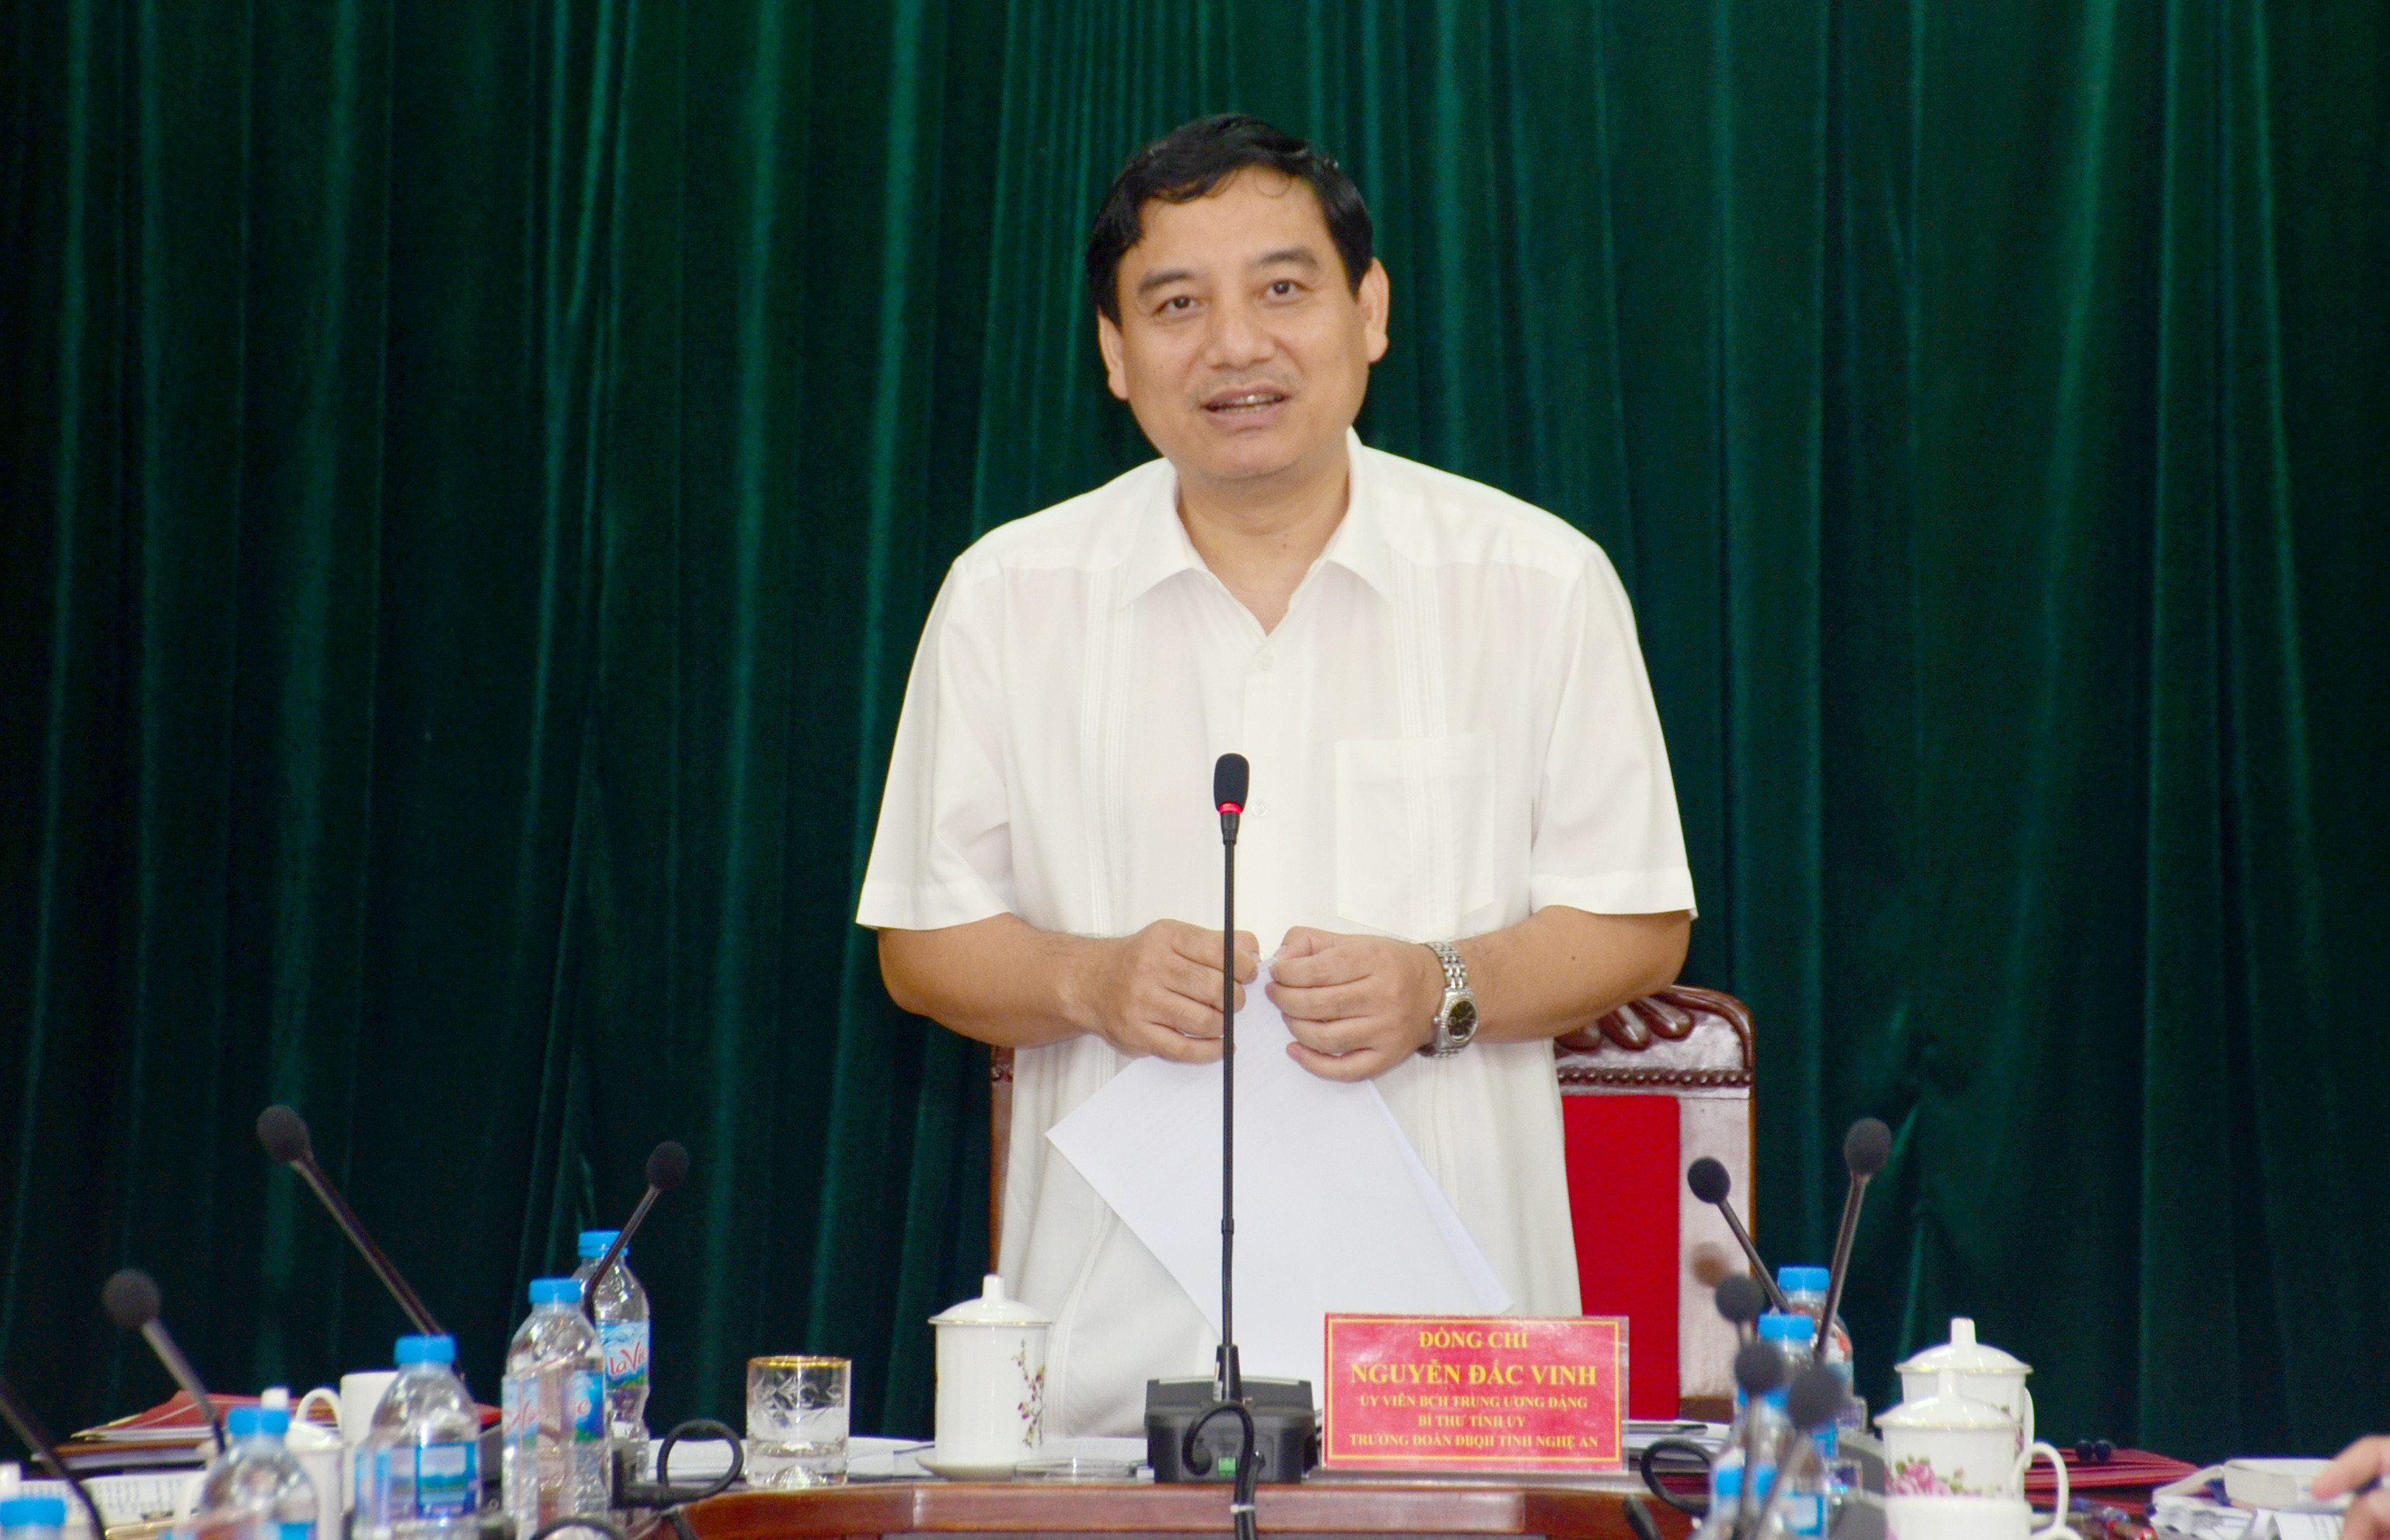 Bí thư Tỉnh ủy Nguyễn Đắc Vinh phát biểu kết luận cuộc làm việc. Ảnh: Thành Duy